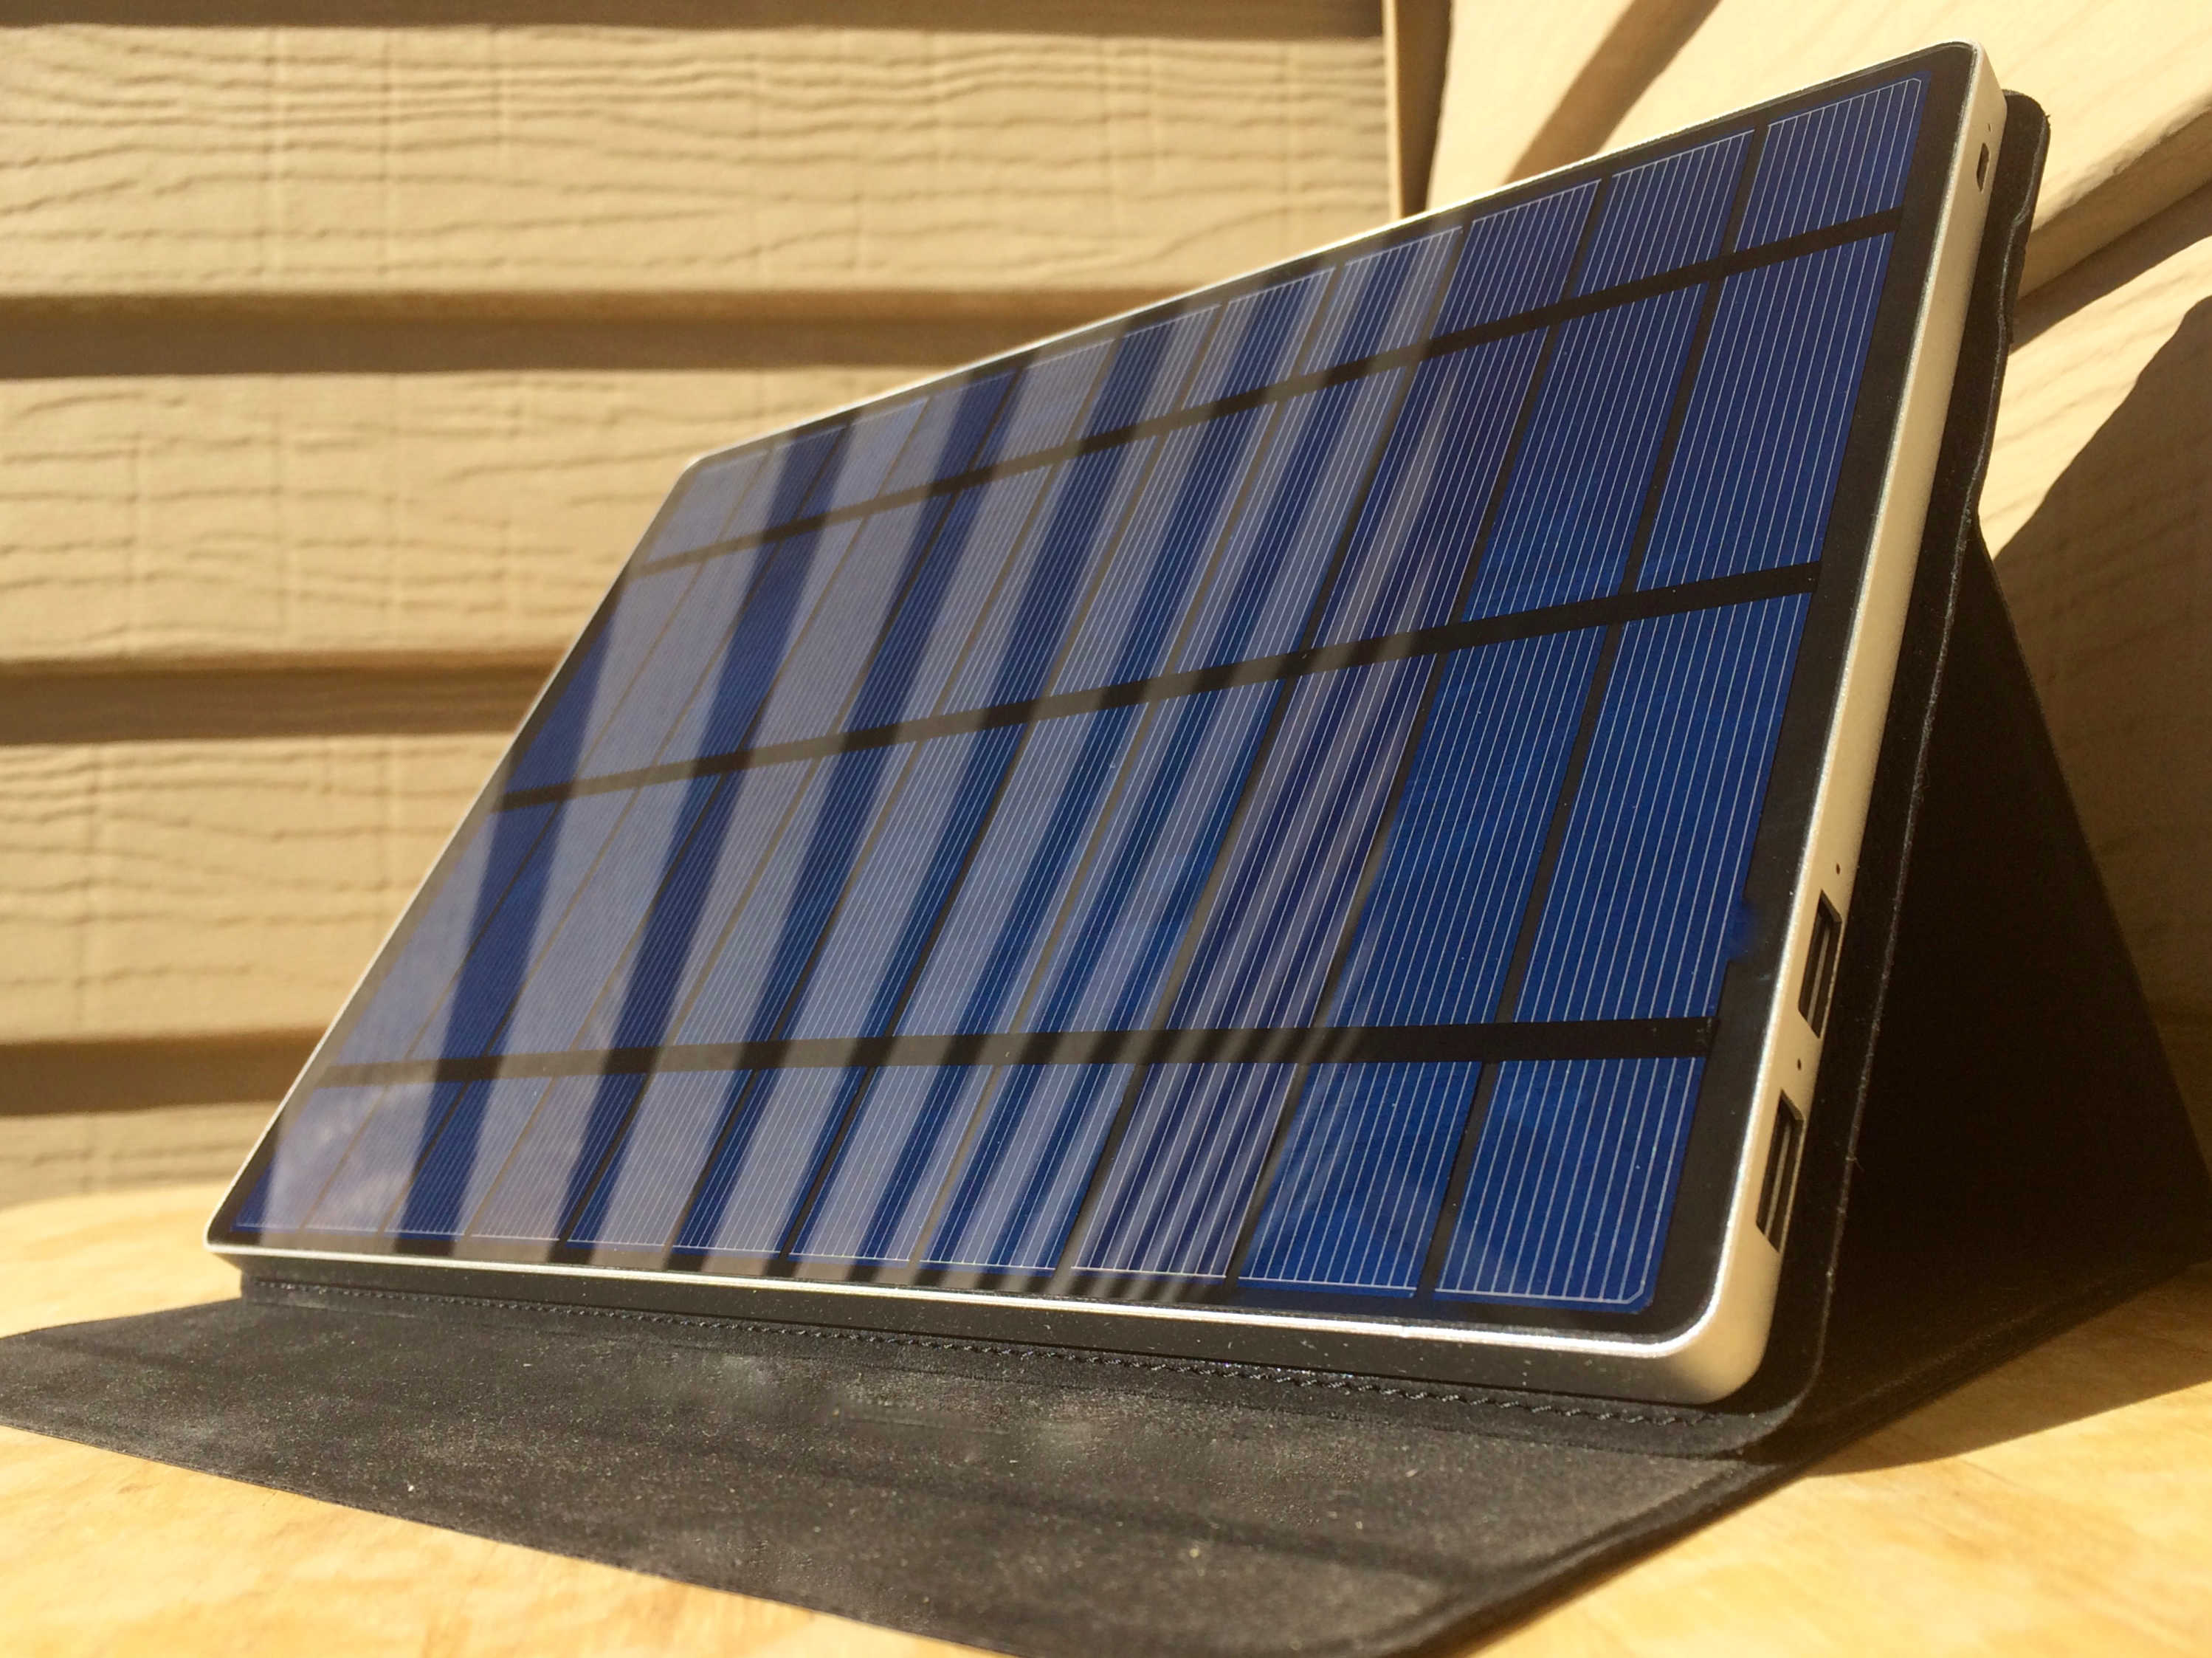 Solartab solar charger